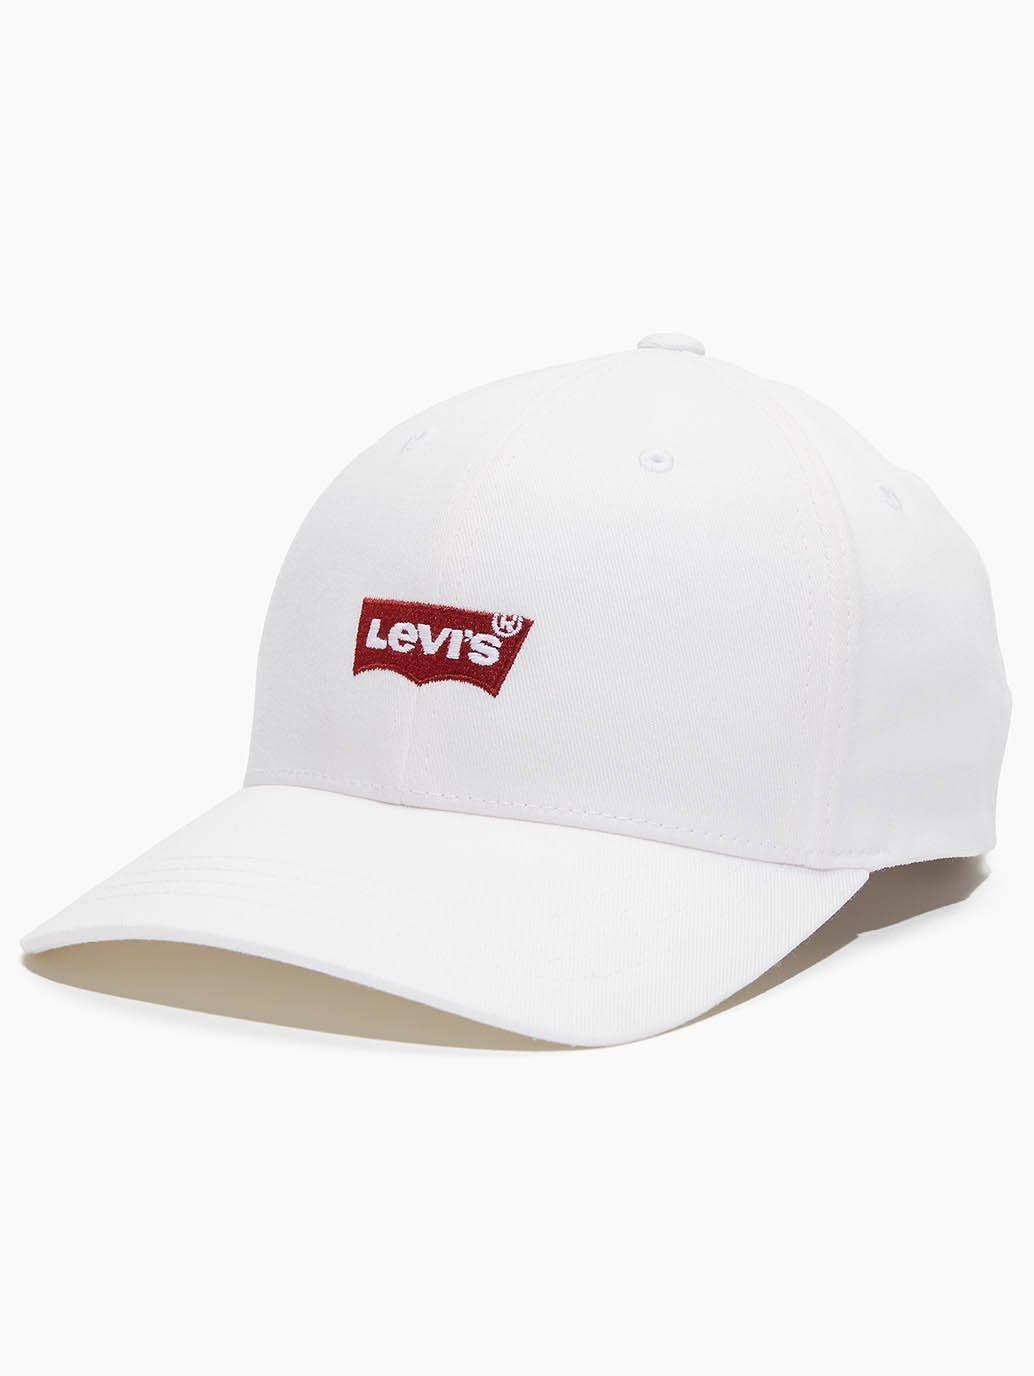 Top 73+ imagen levi’s hats online